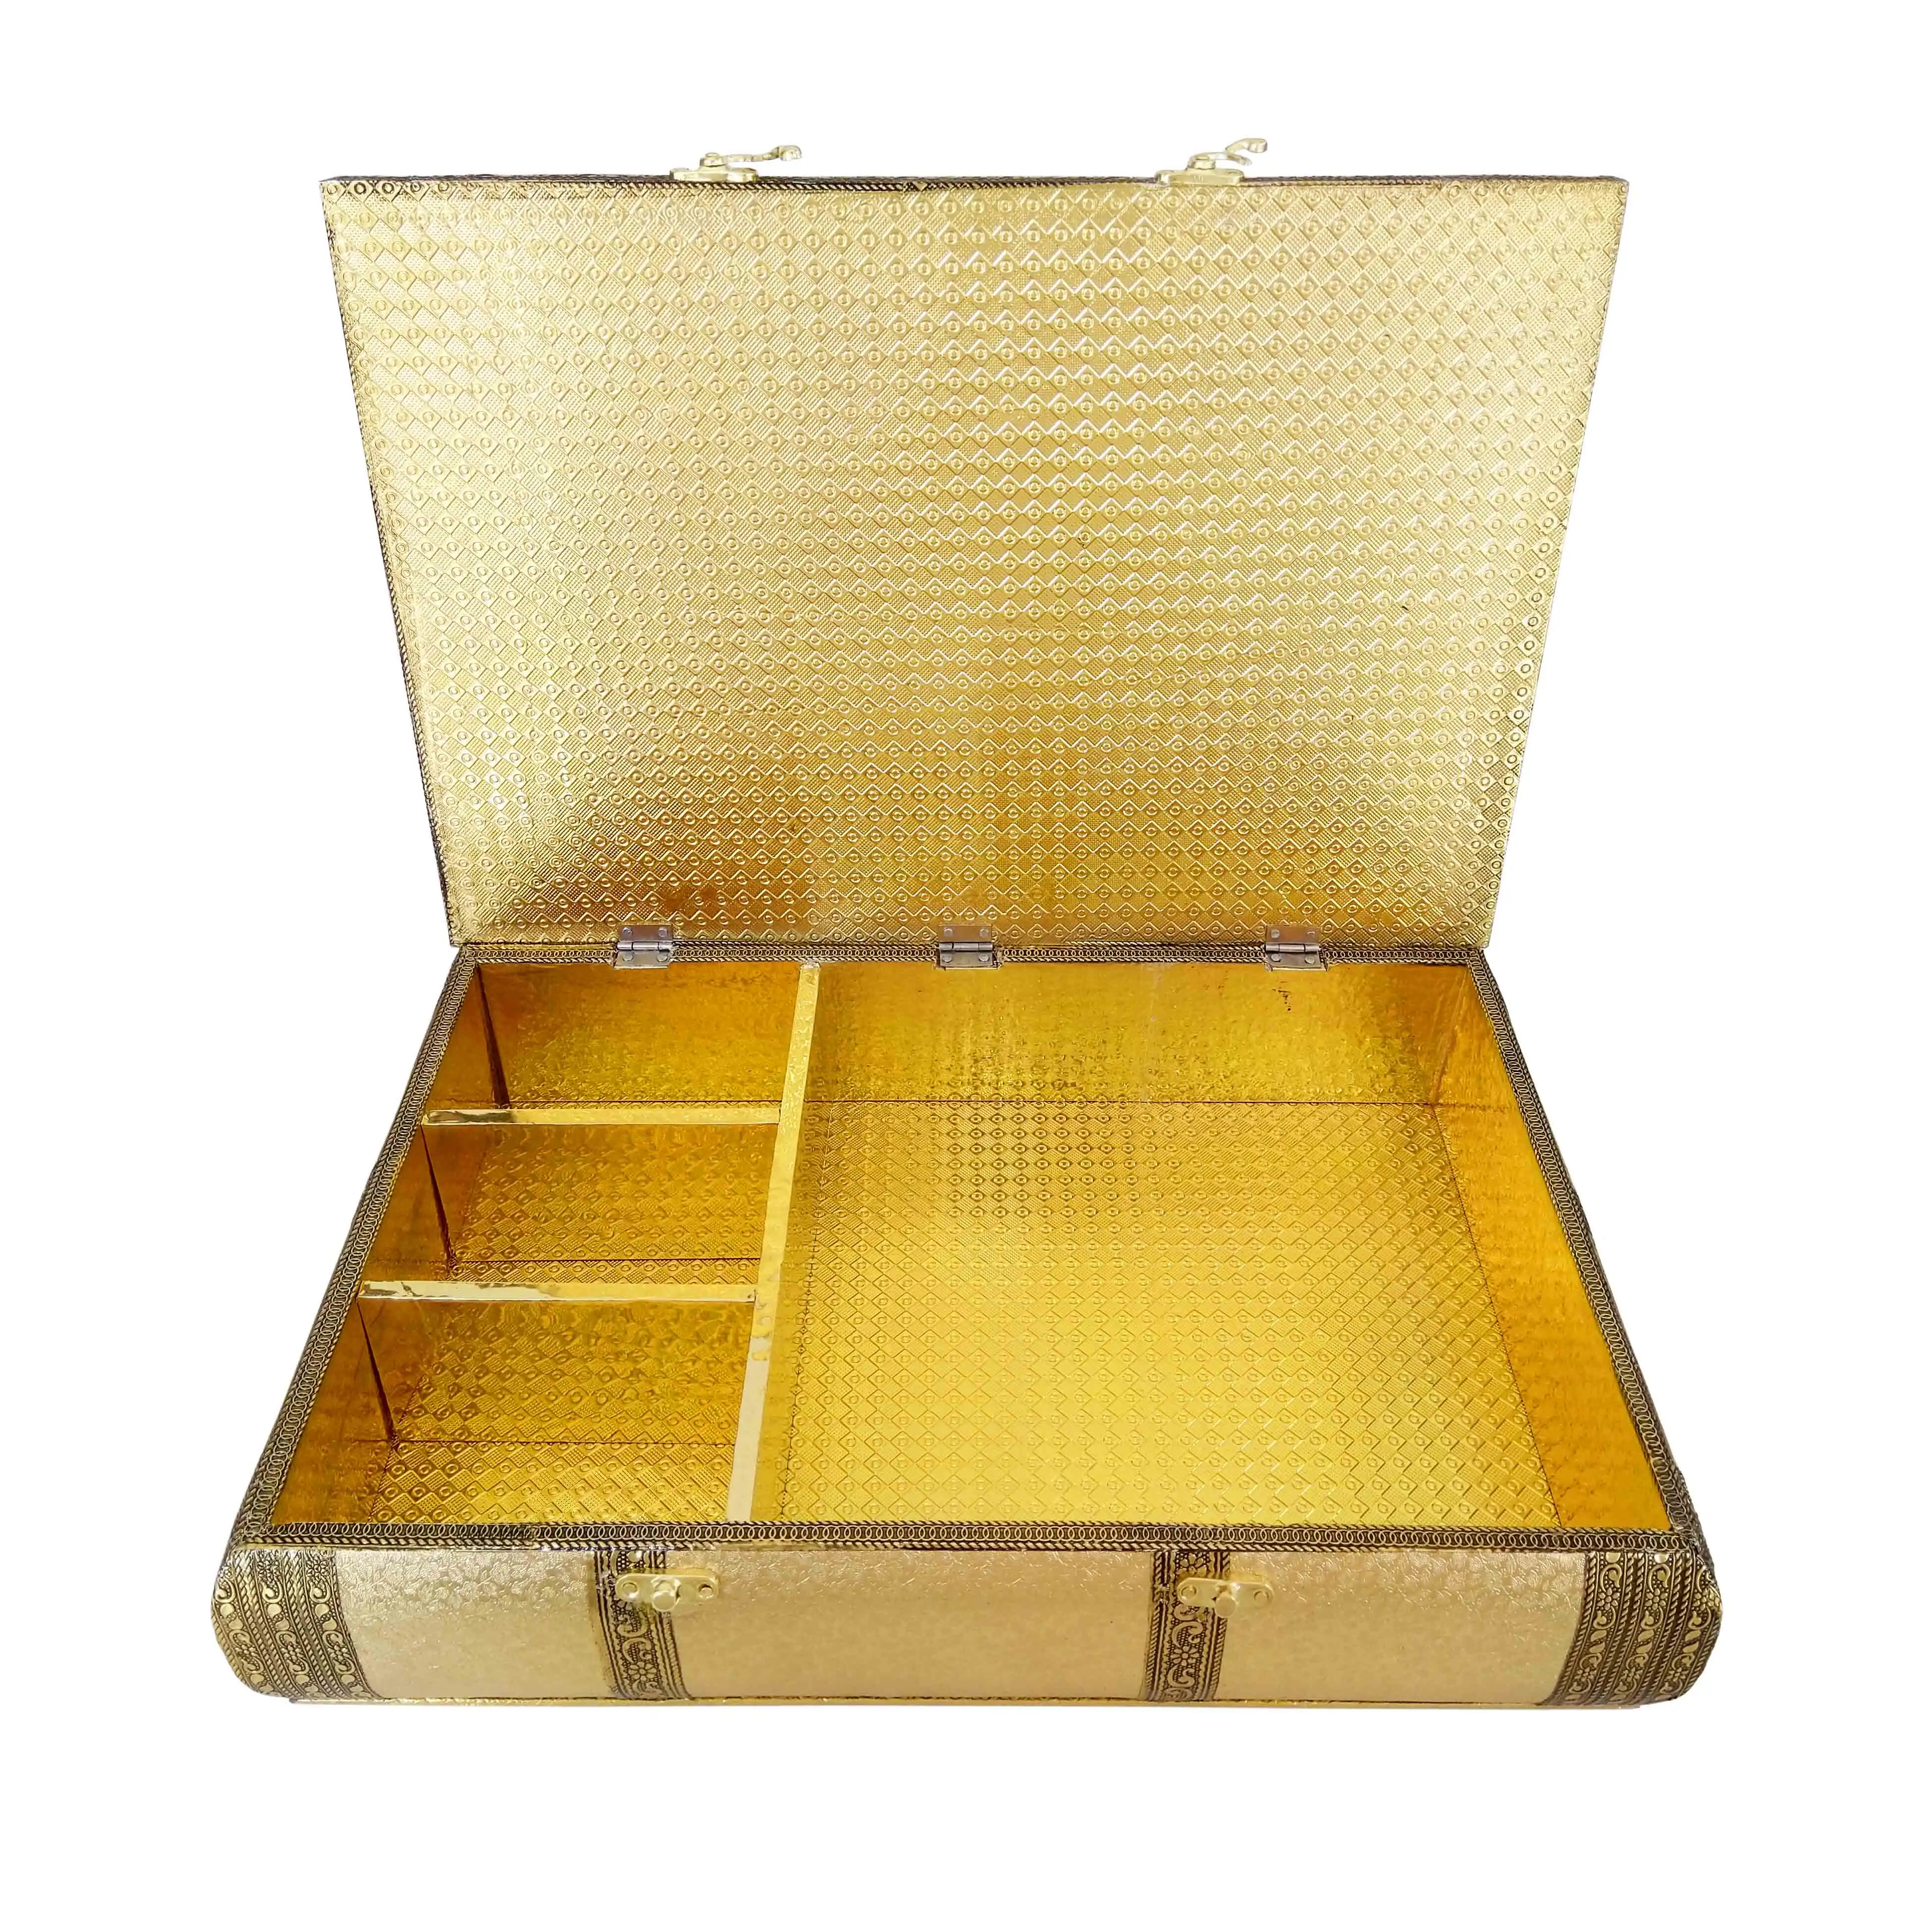 황금 인공적인 가죽 끝, 나무로 되는 Handmade 여분 큰 우수한 초콜렛 상자/감미로운 상자